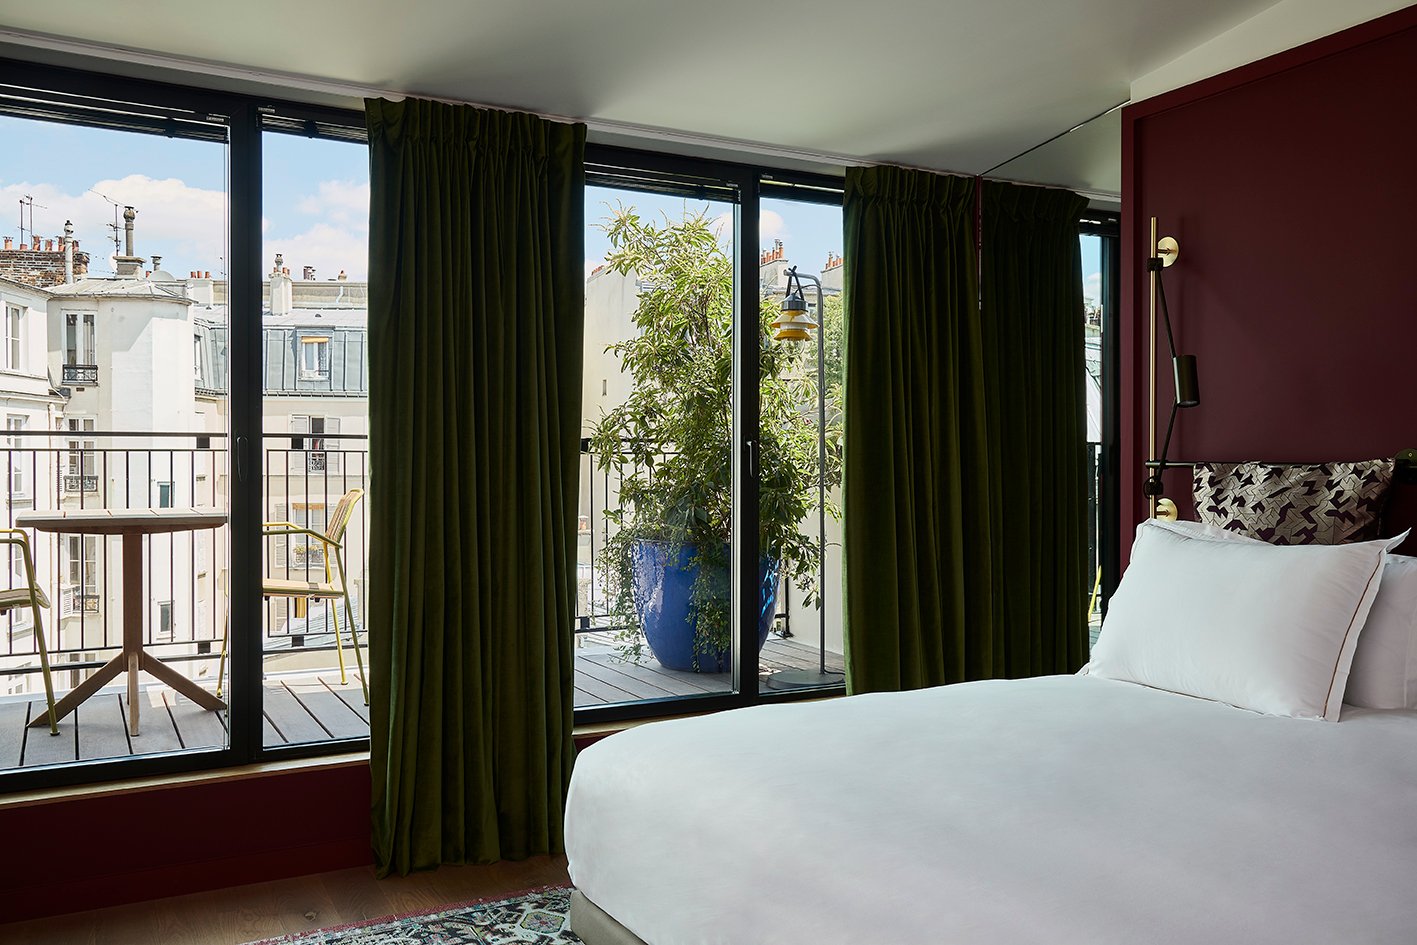 Boutique hôtel design Paris France Pigalle Le Ballu 4 étoiles chambre suite avec terrasse